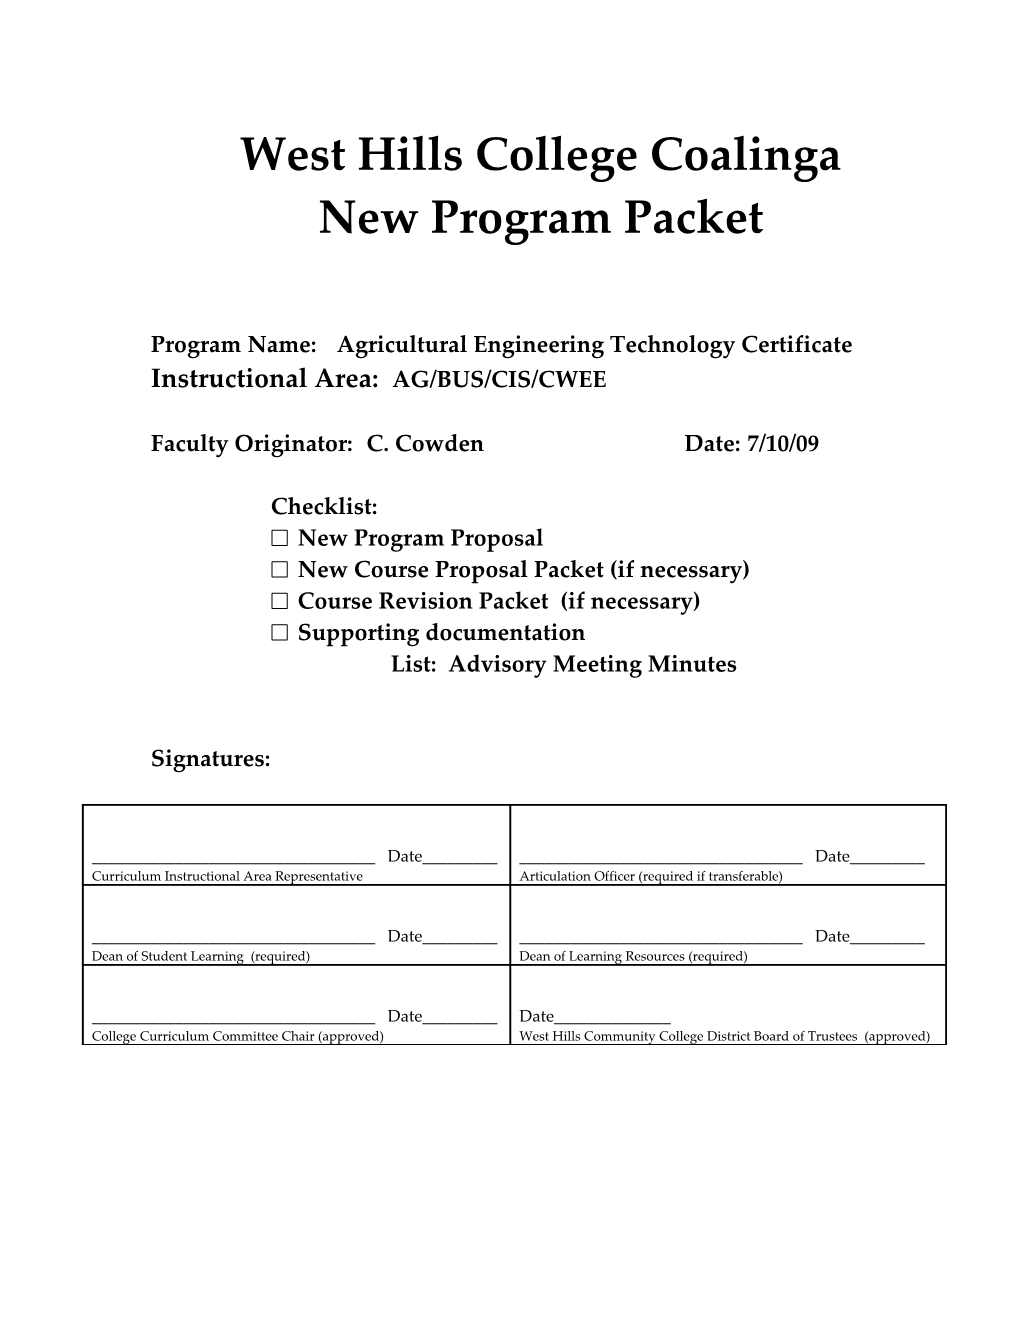 Revised Program Packet